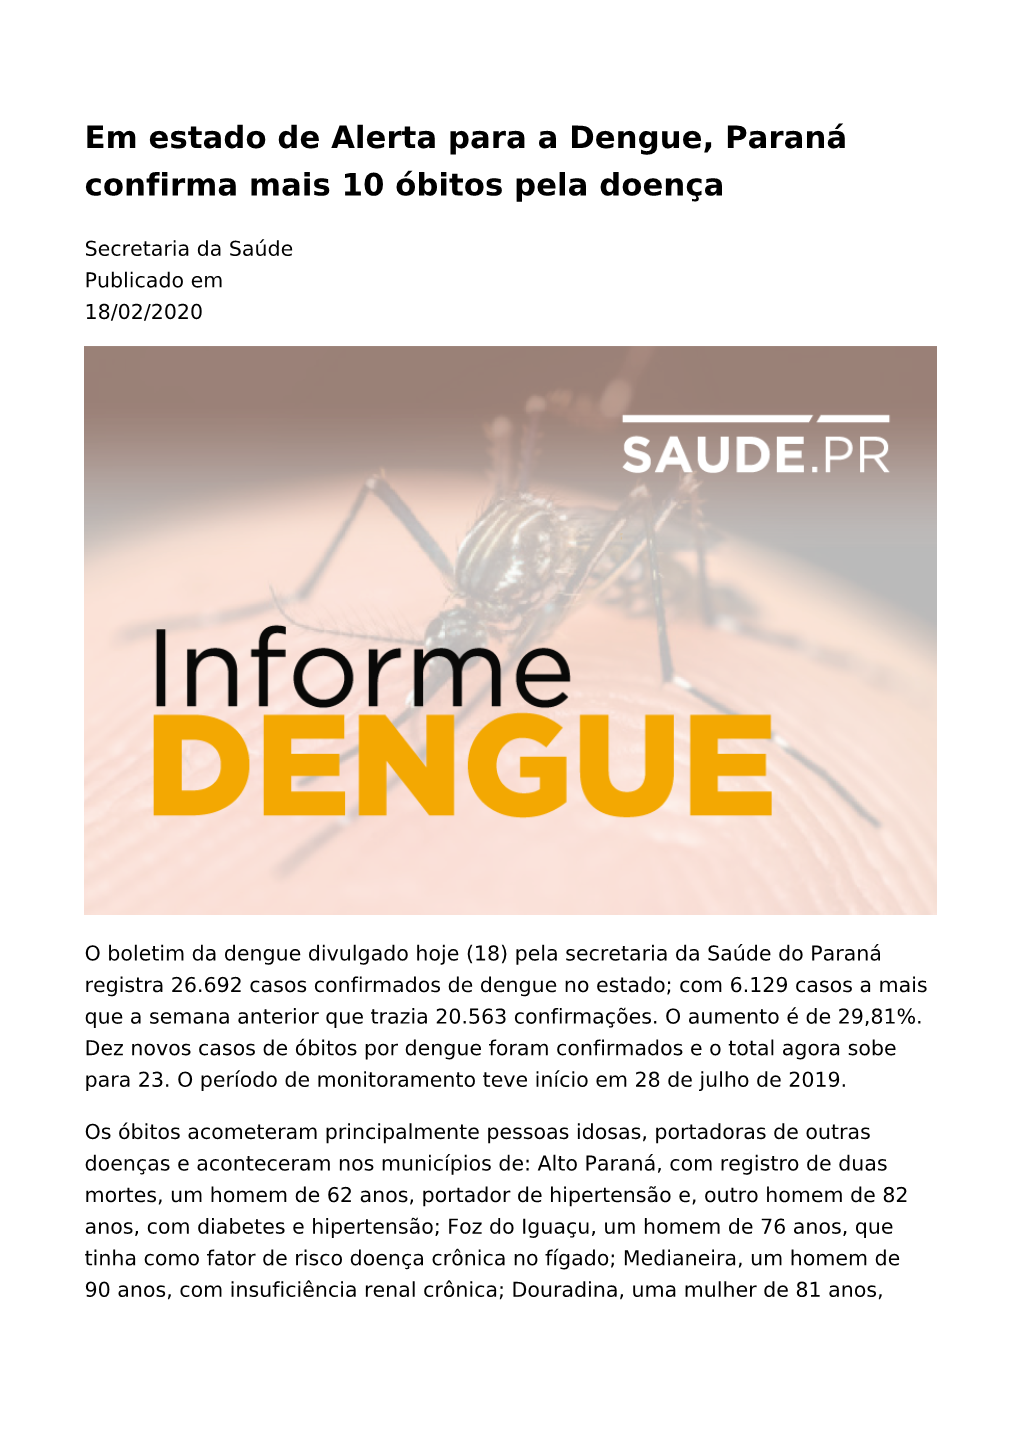 Em Estado De Alerta Para a Dengue, Paraná Confirma Mais 10 Óbitos Pela Doença